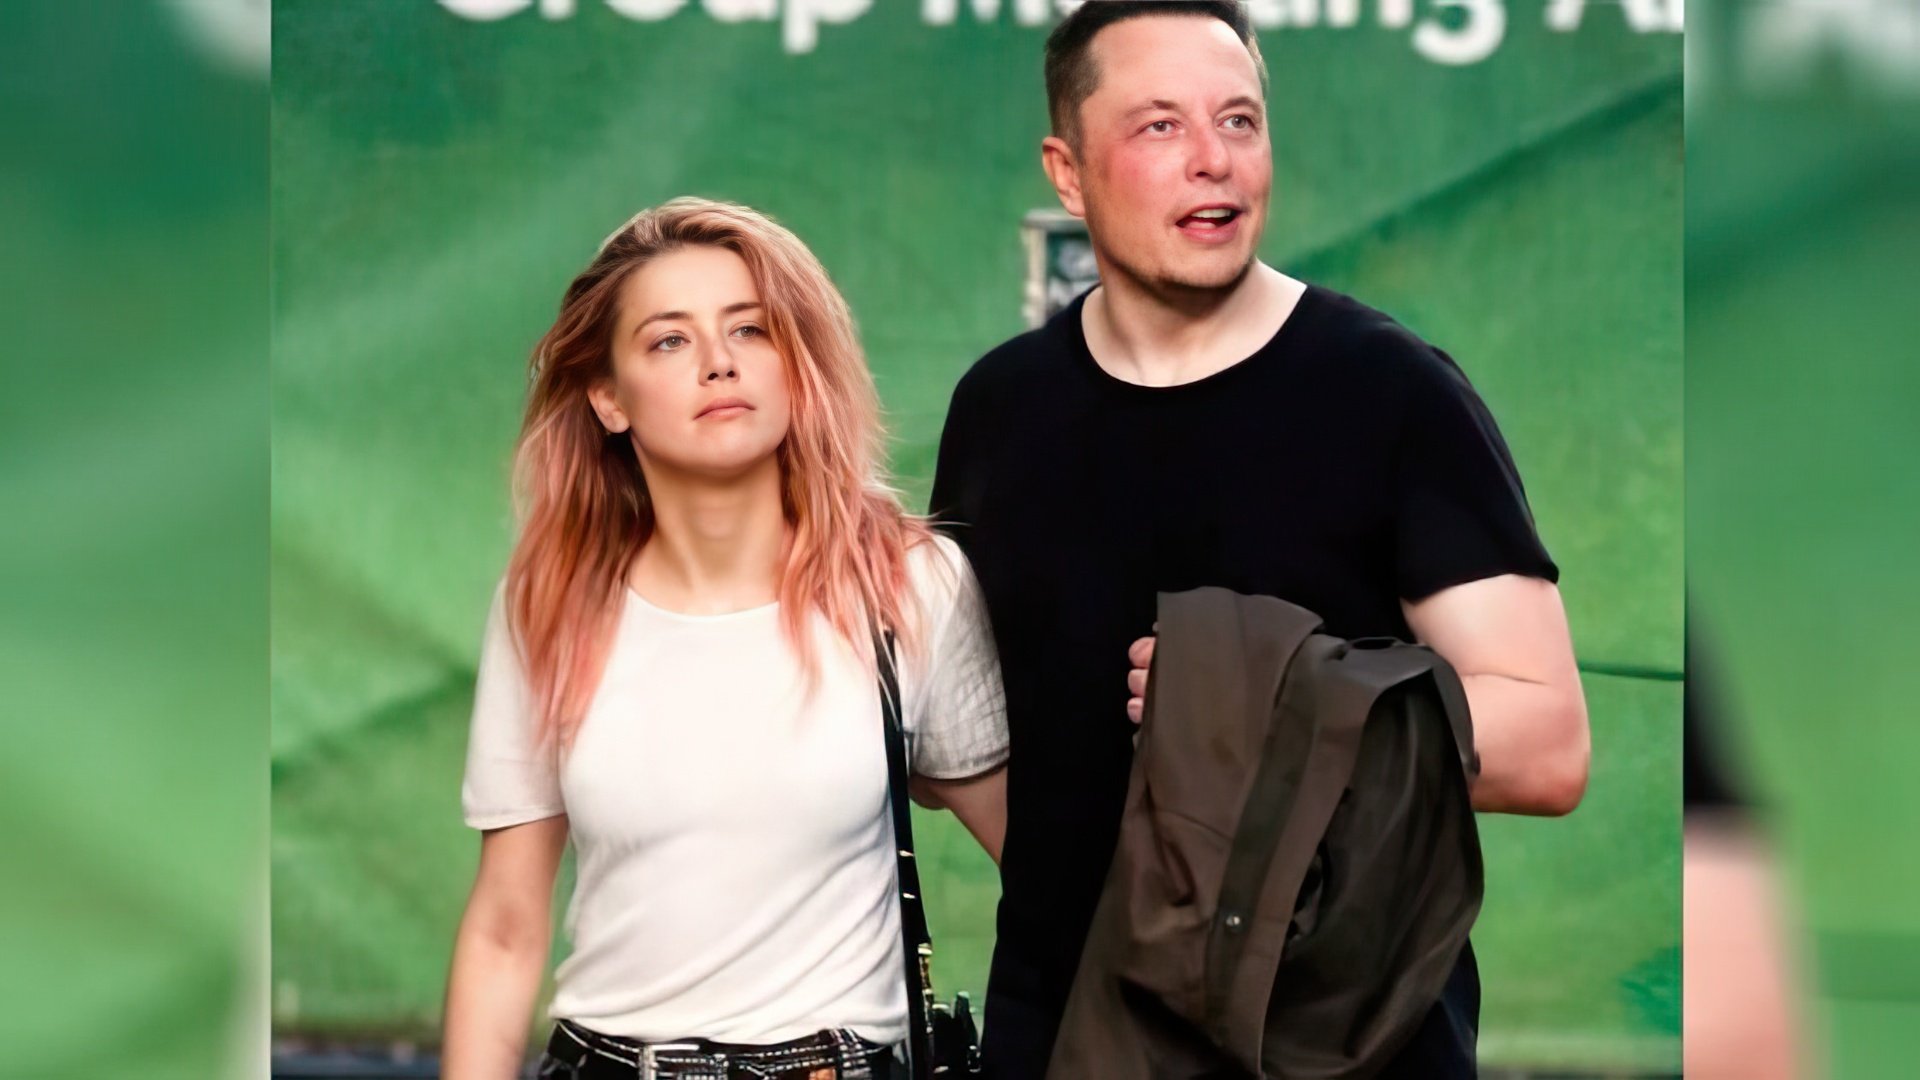 Amber Heard dated Elon Musk